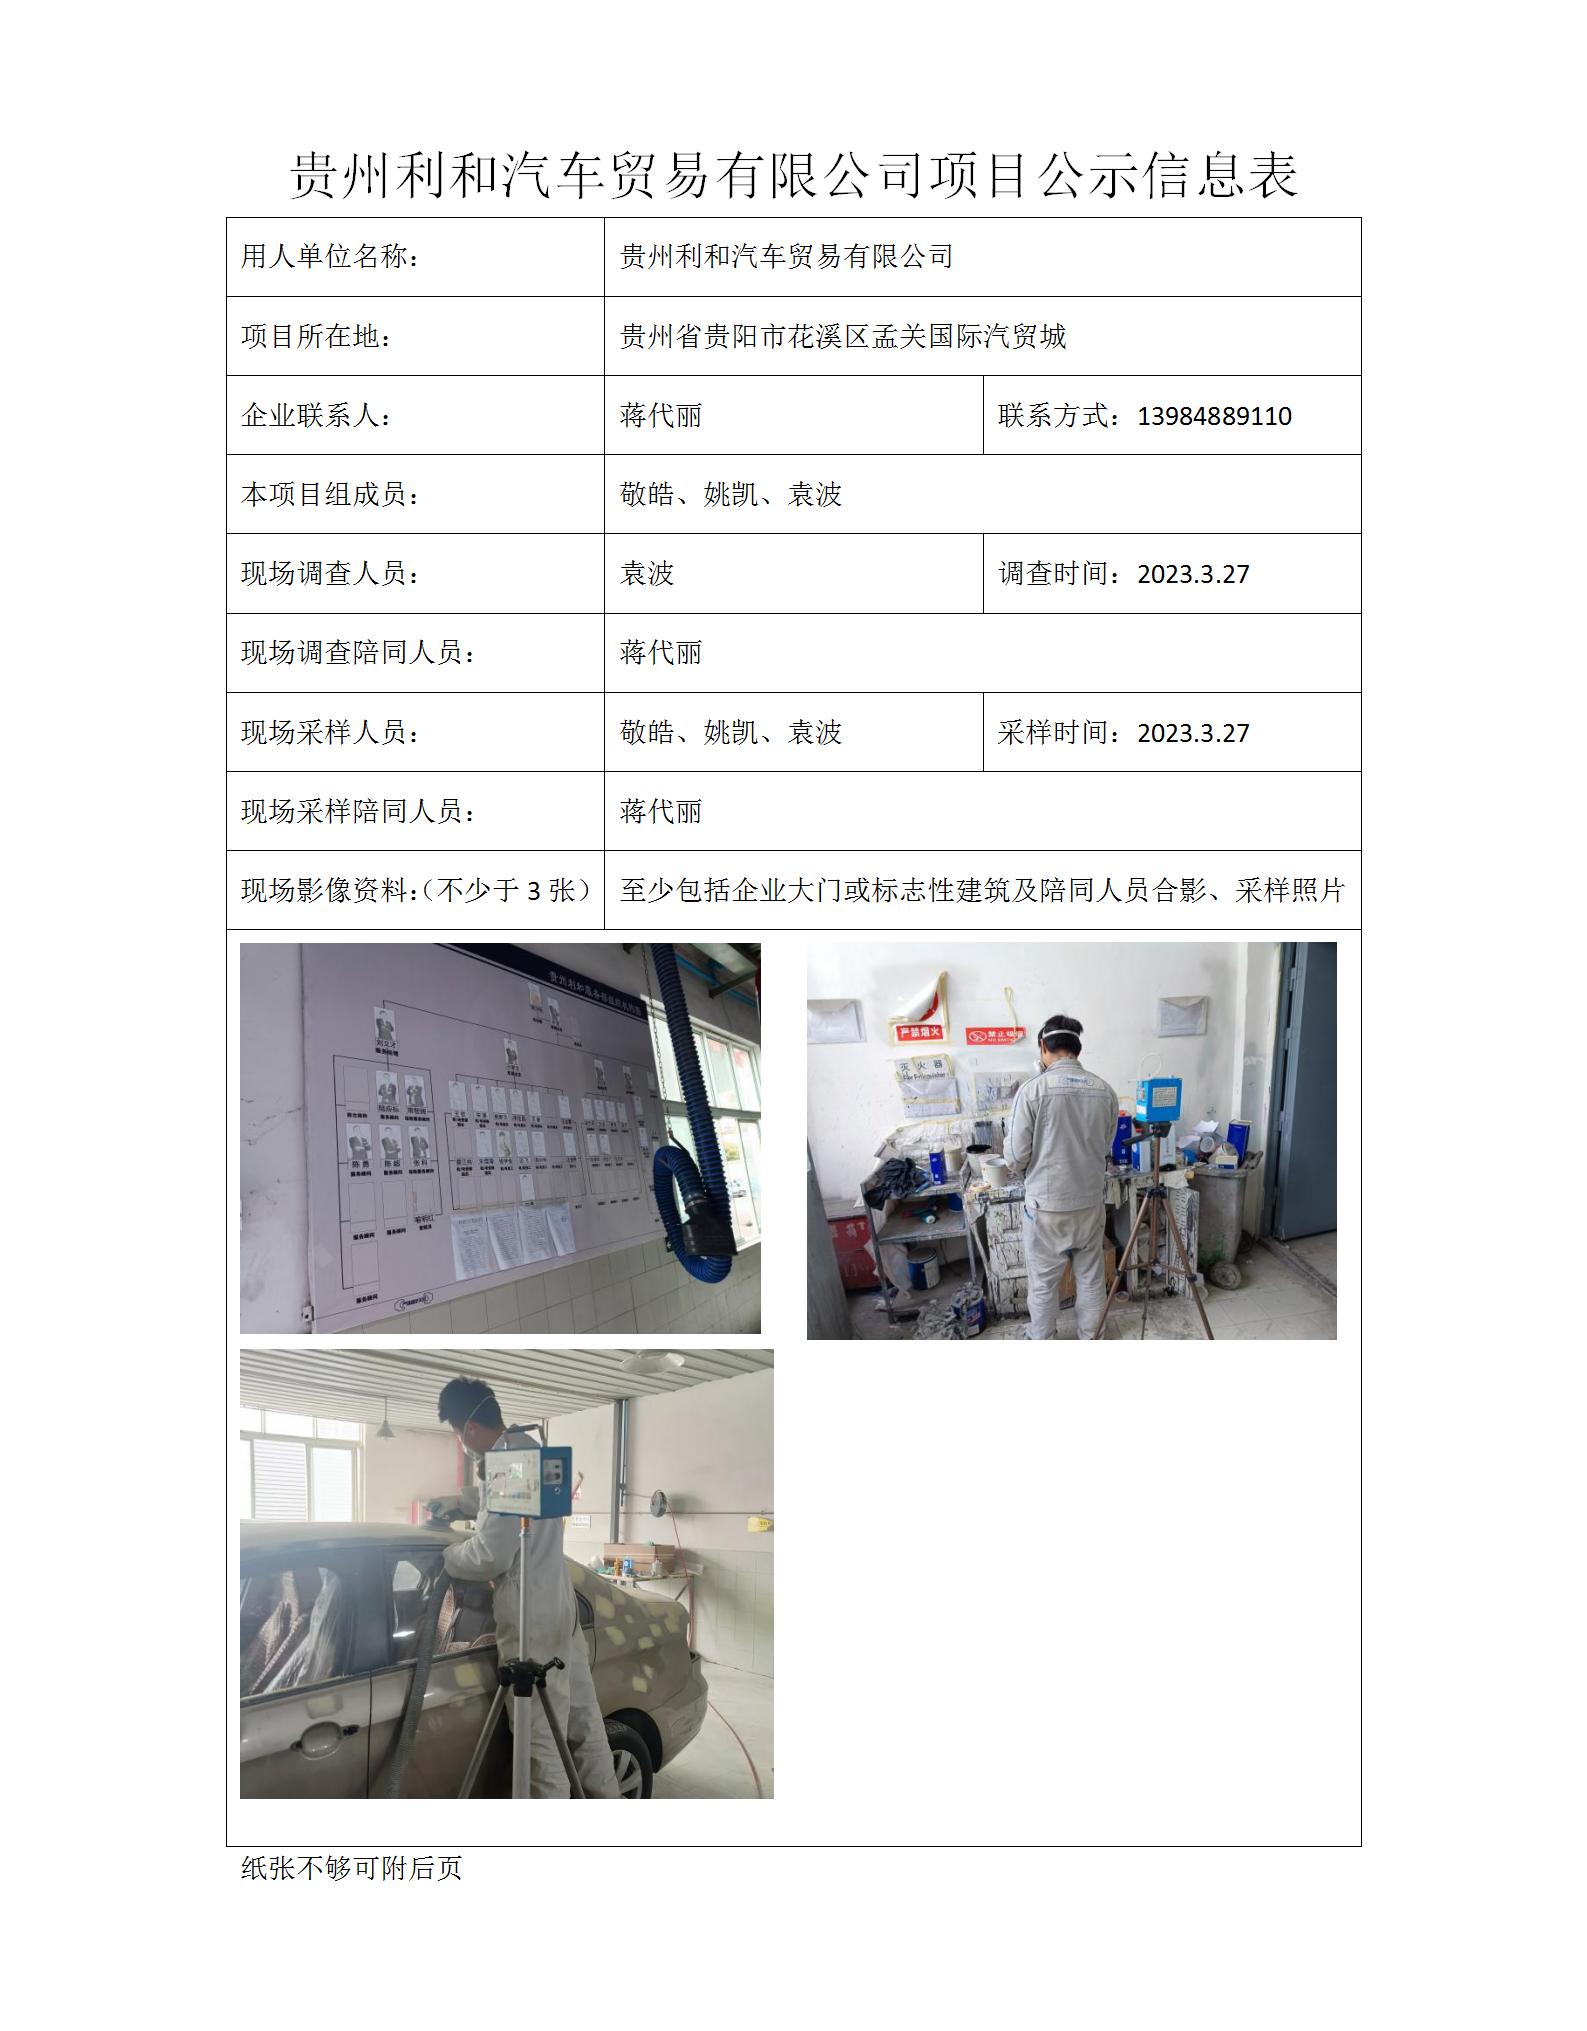 MDJ2023-0020贵州利和汽车贸易有限公司项目公示信息表_01.jpg